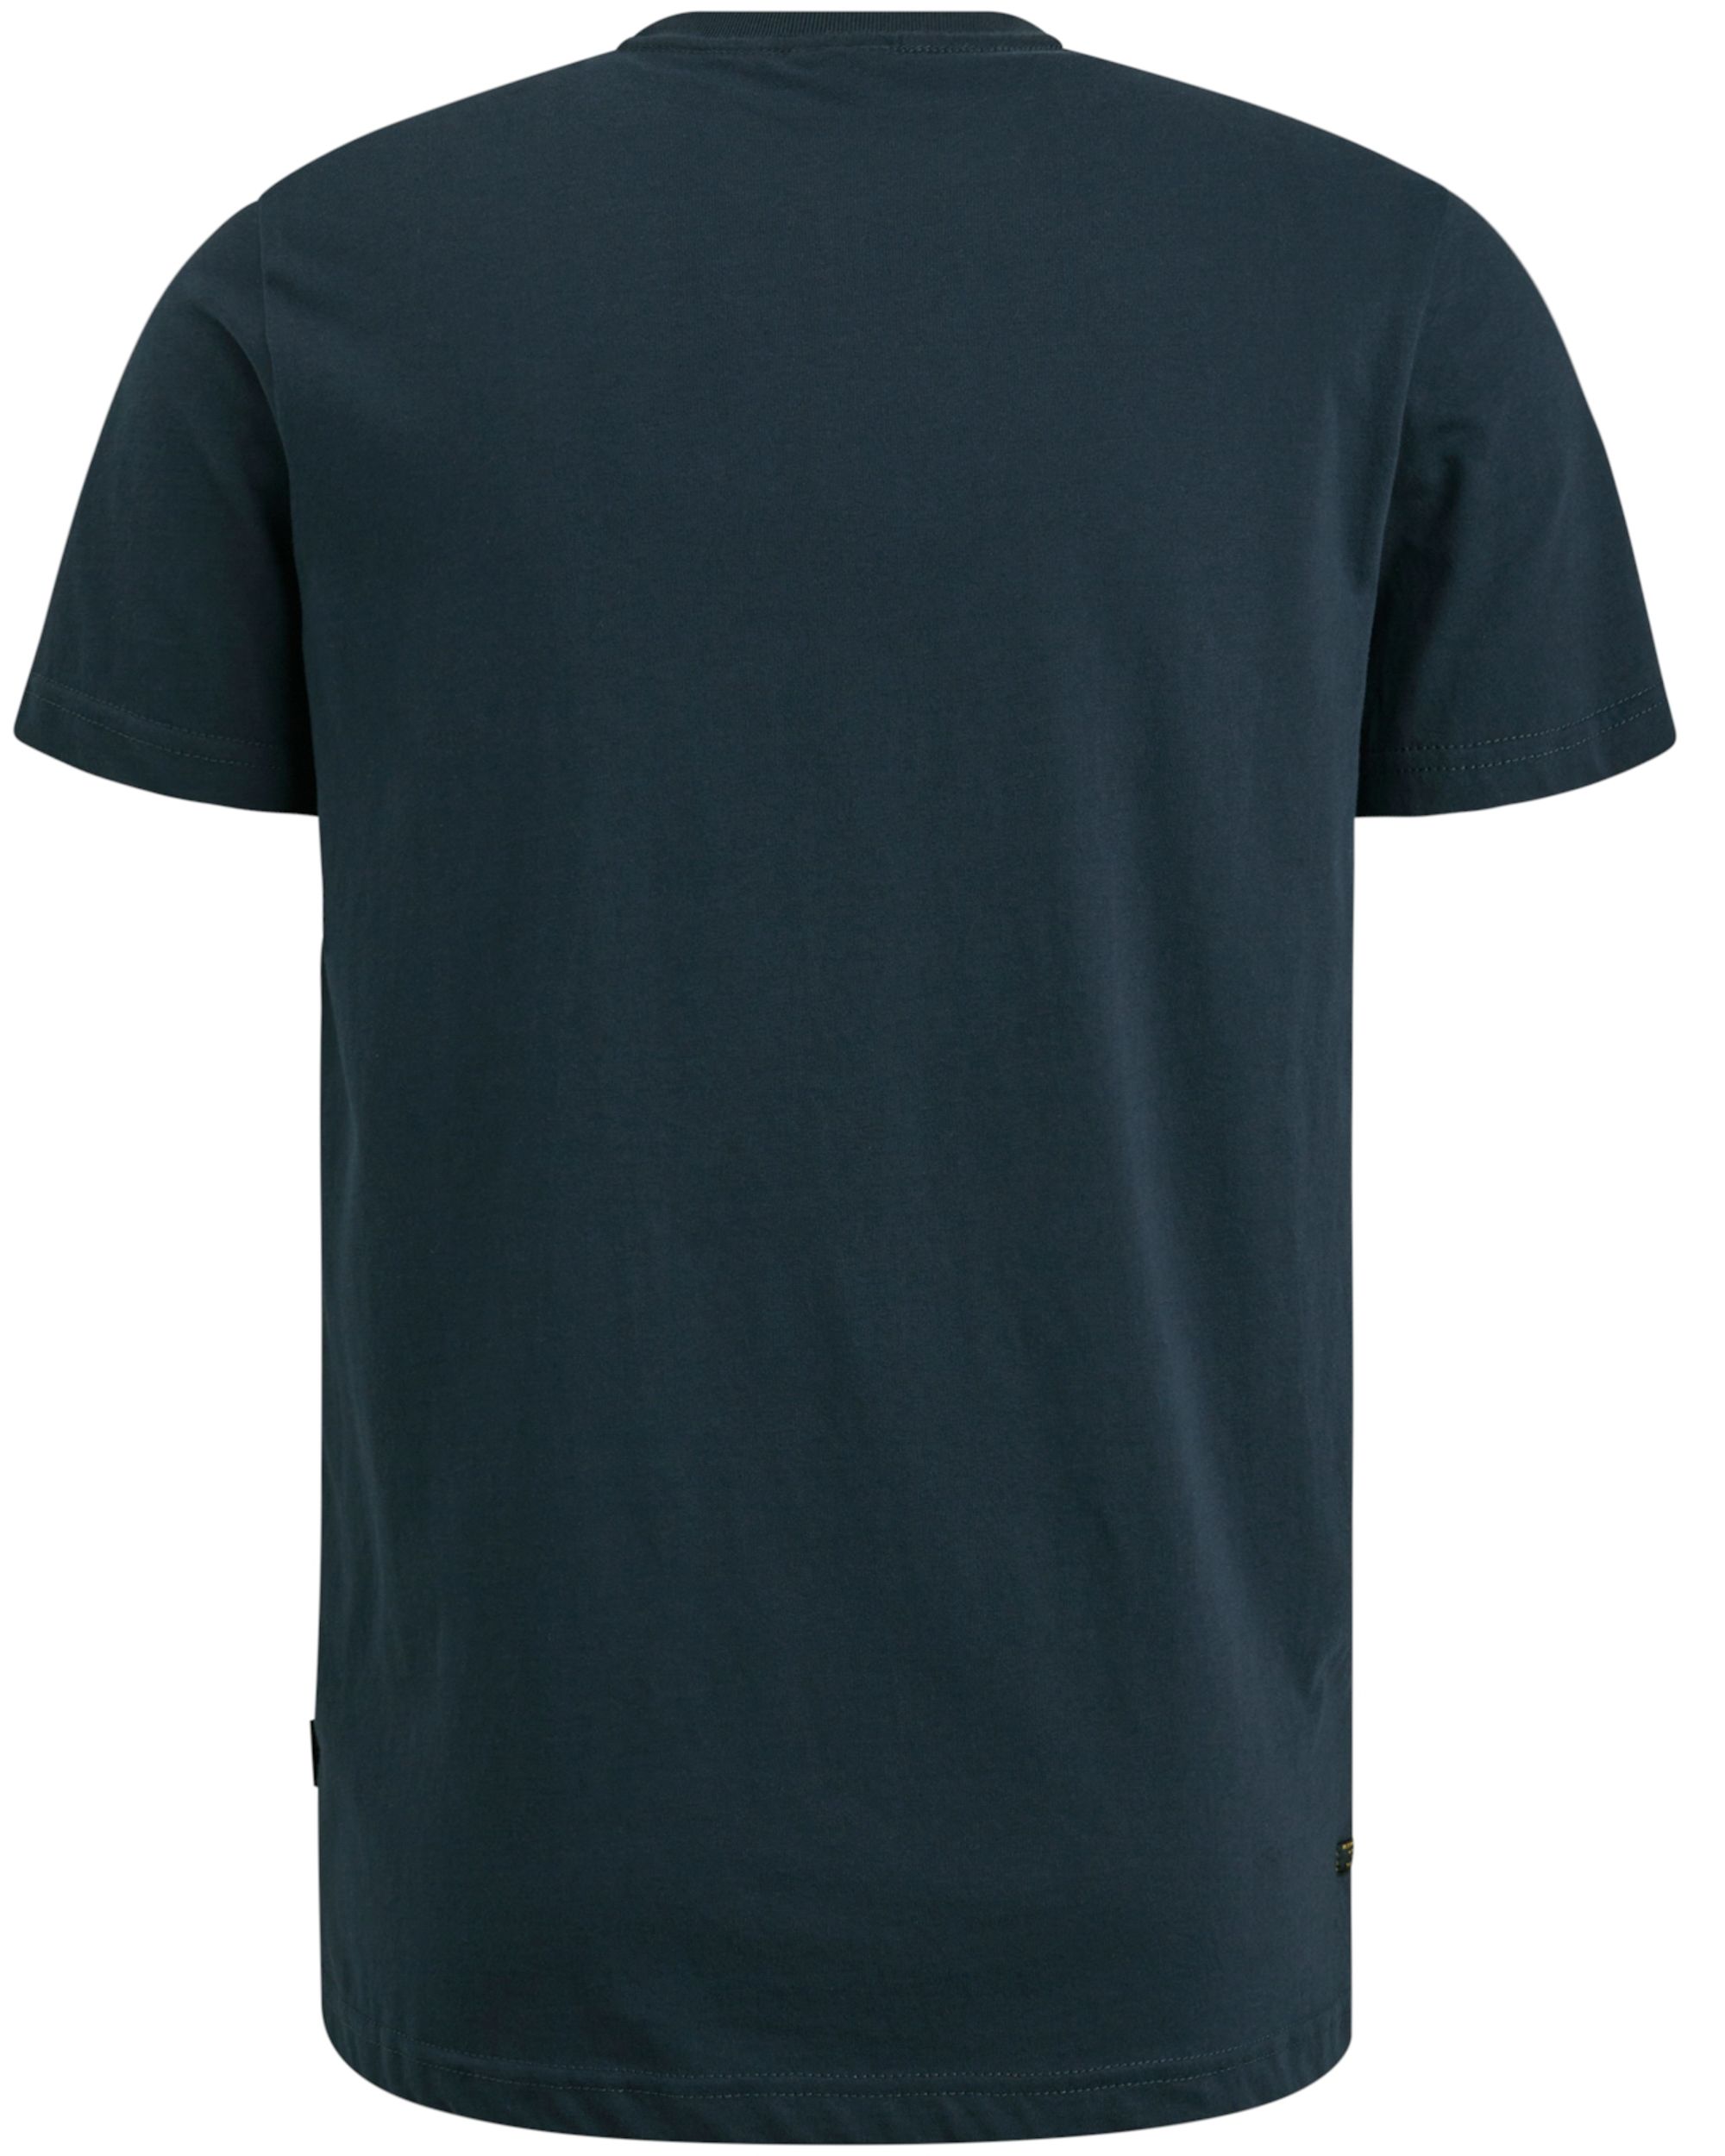 PME Legend T-shirt KM Blauw 090721-001-L